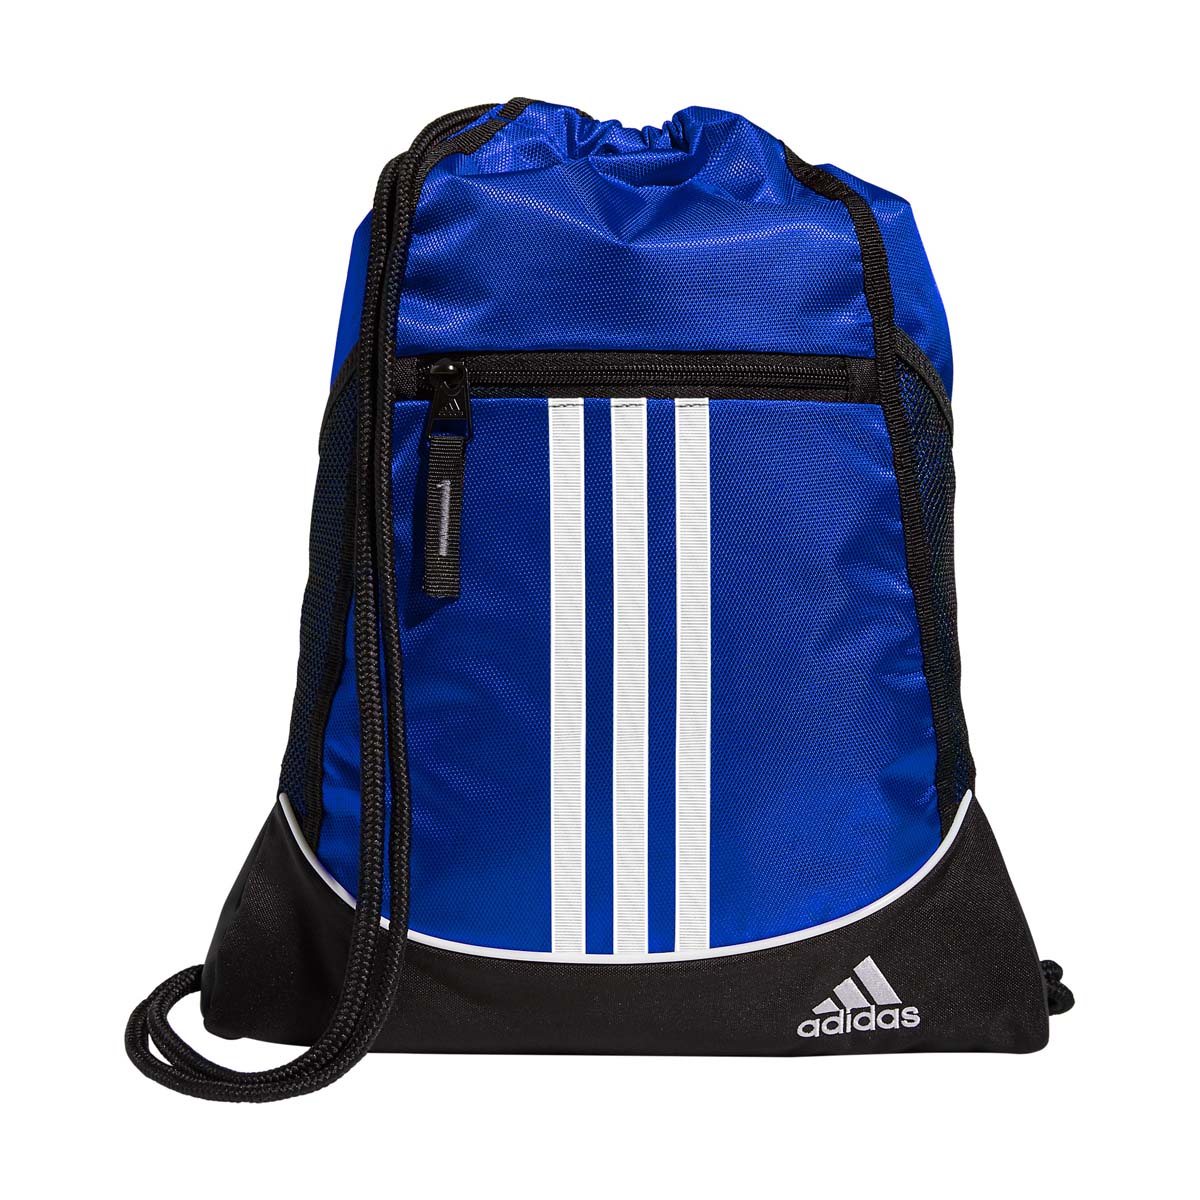 Adidas Alliance II Sackpack Blue - image 1 of 2